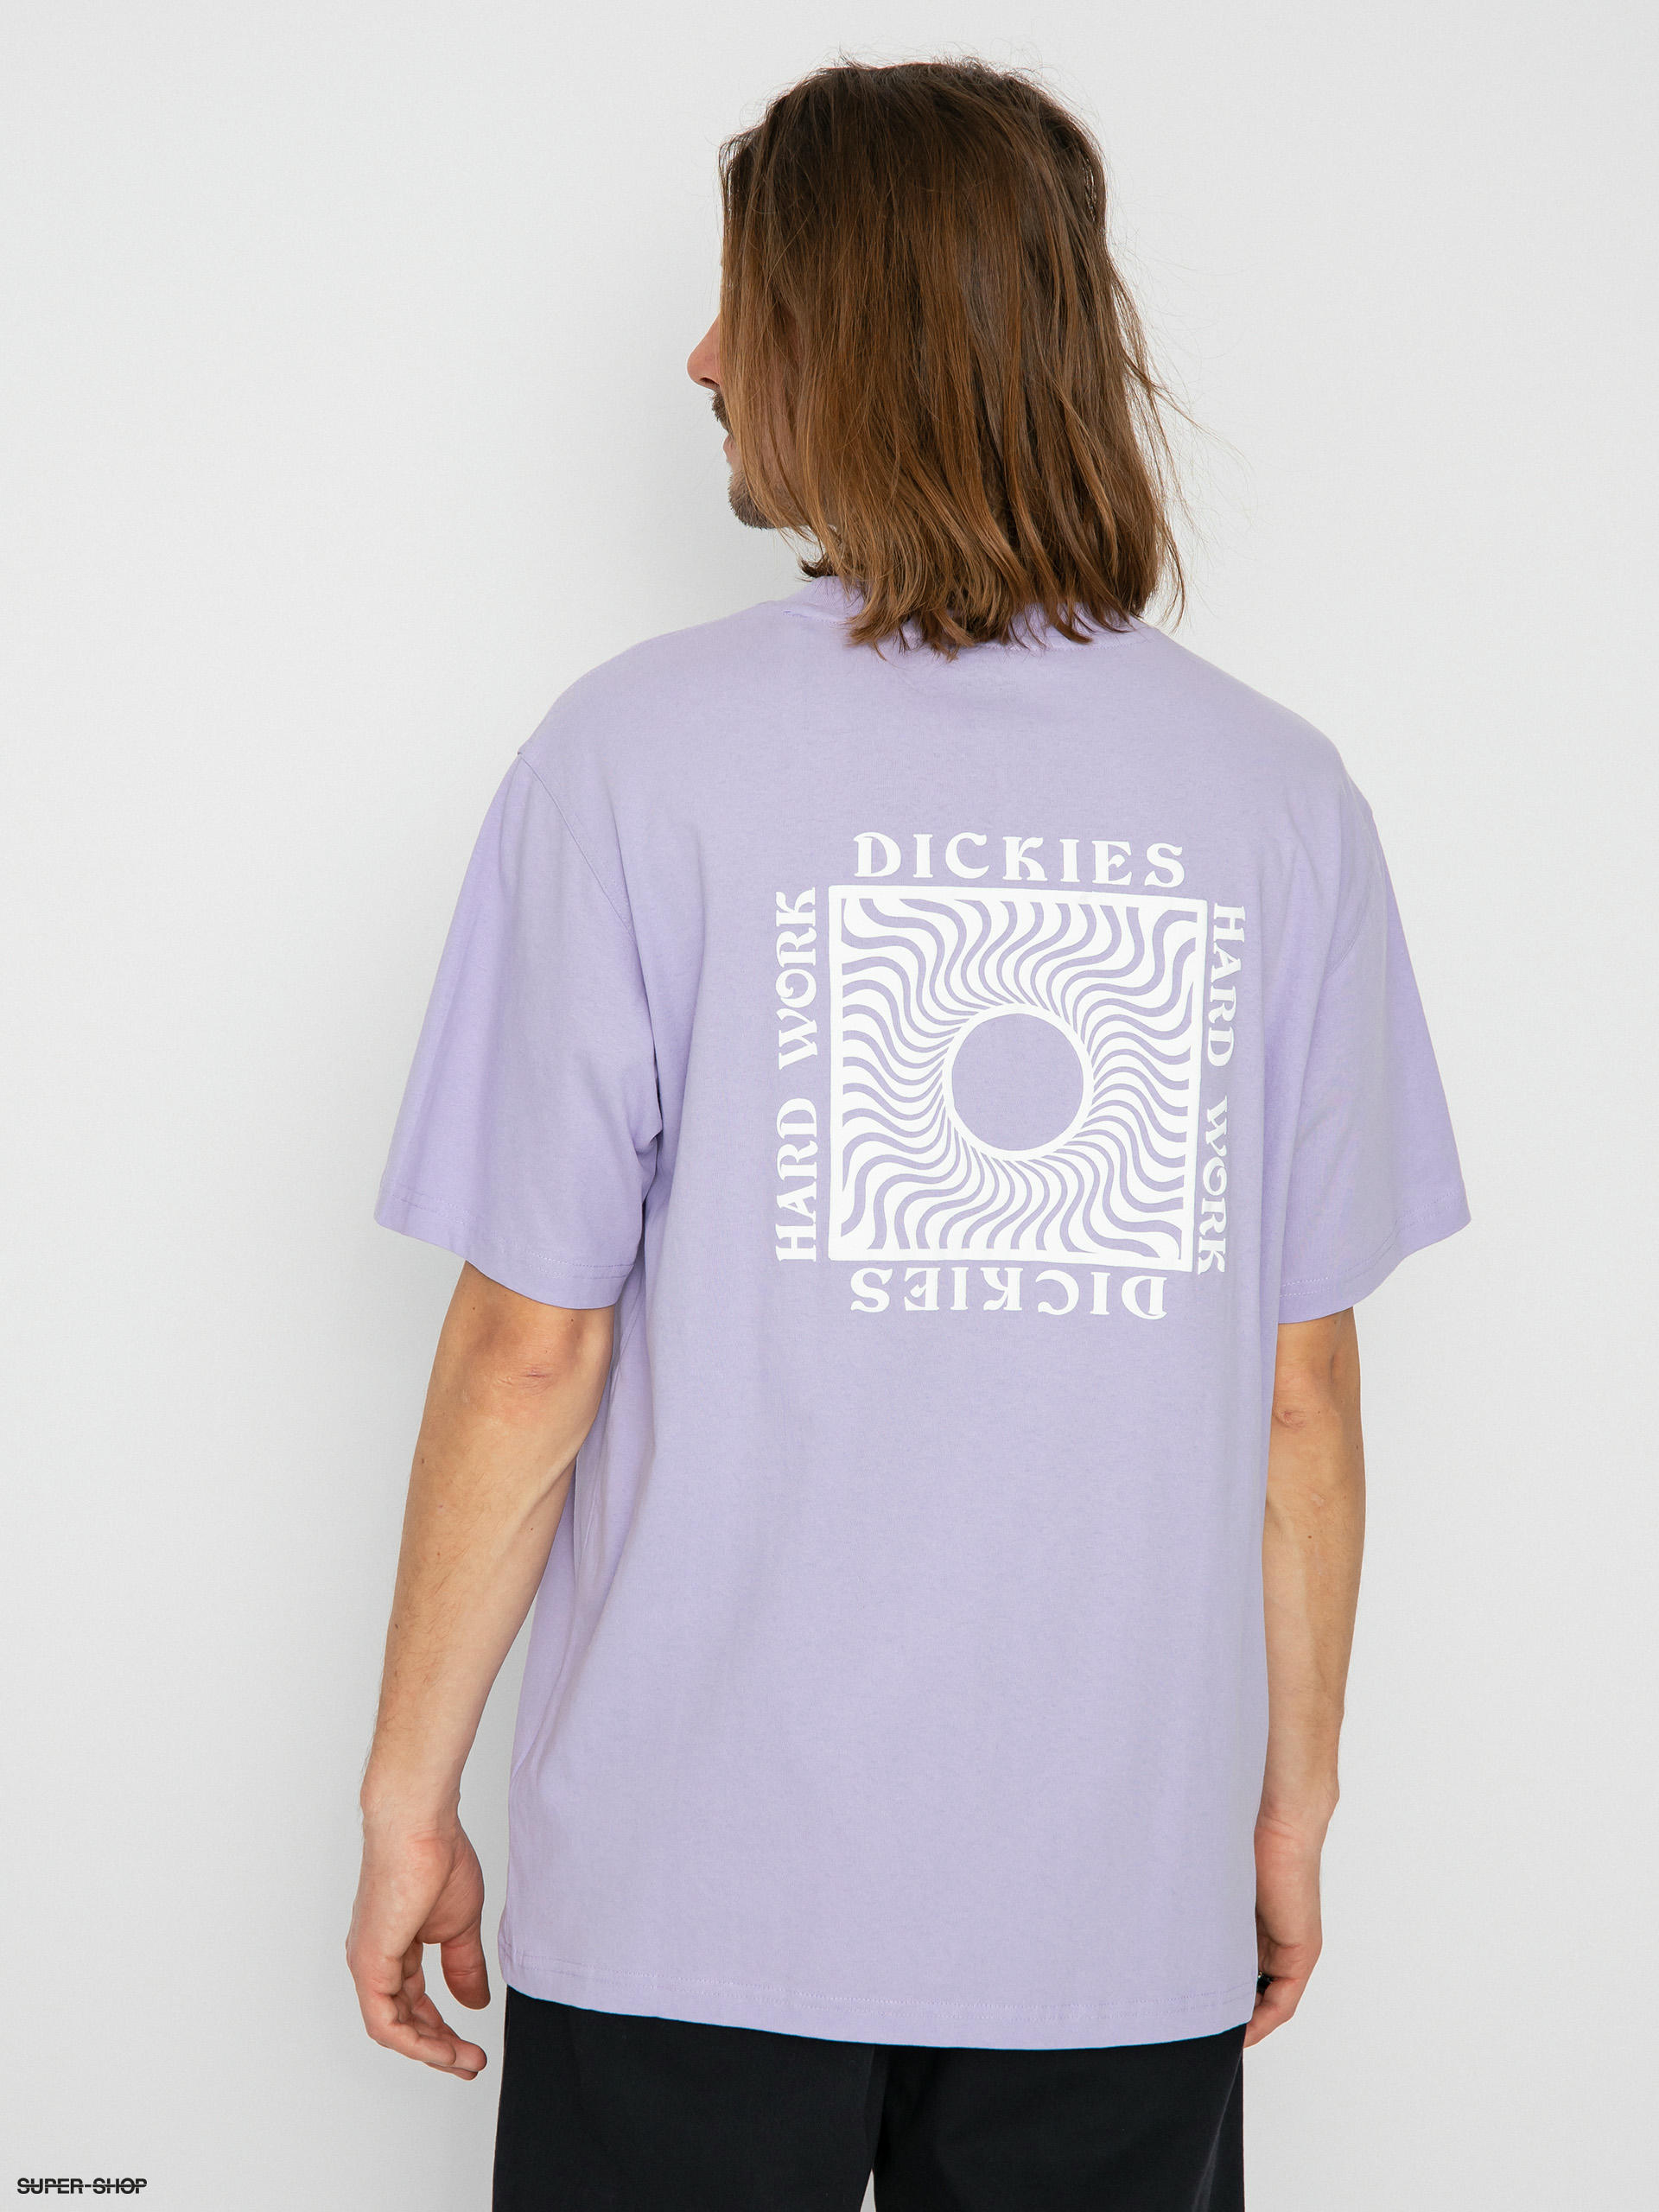 Dickies Oatfield T-shirt (purple rose)